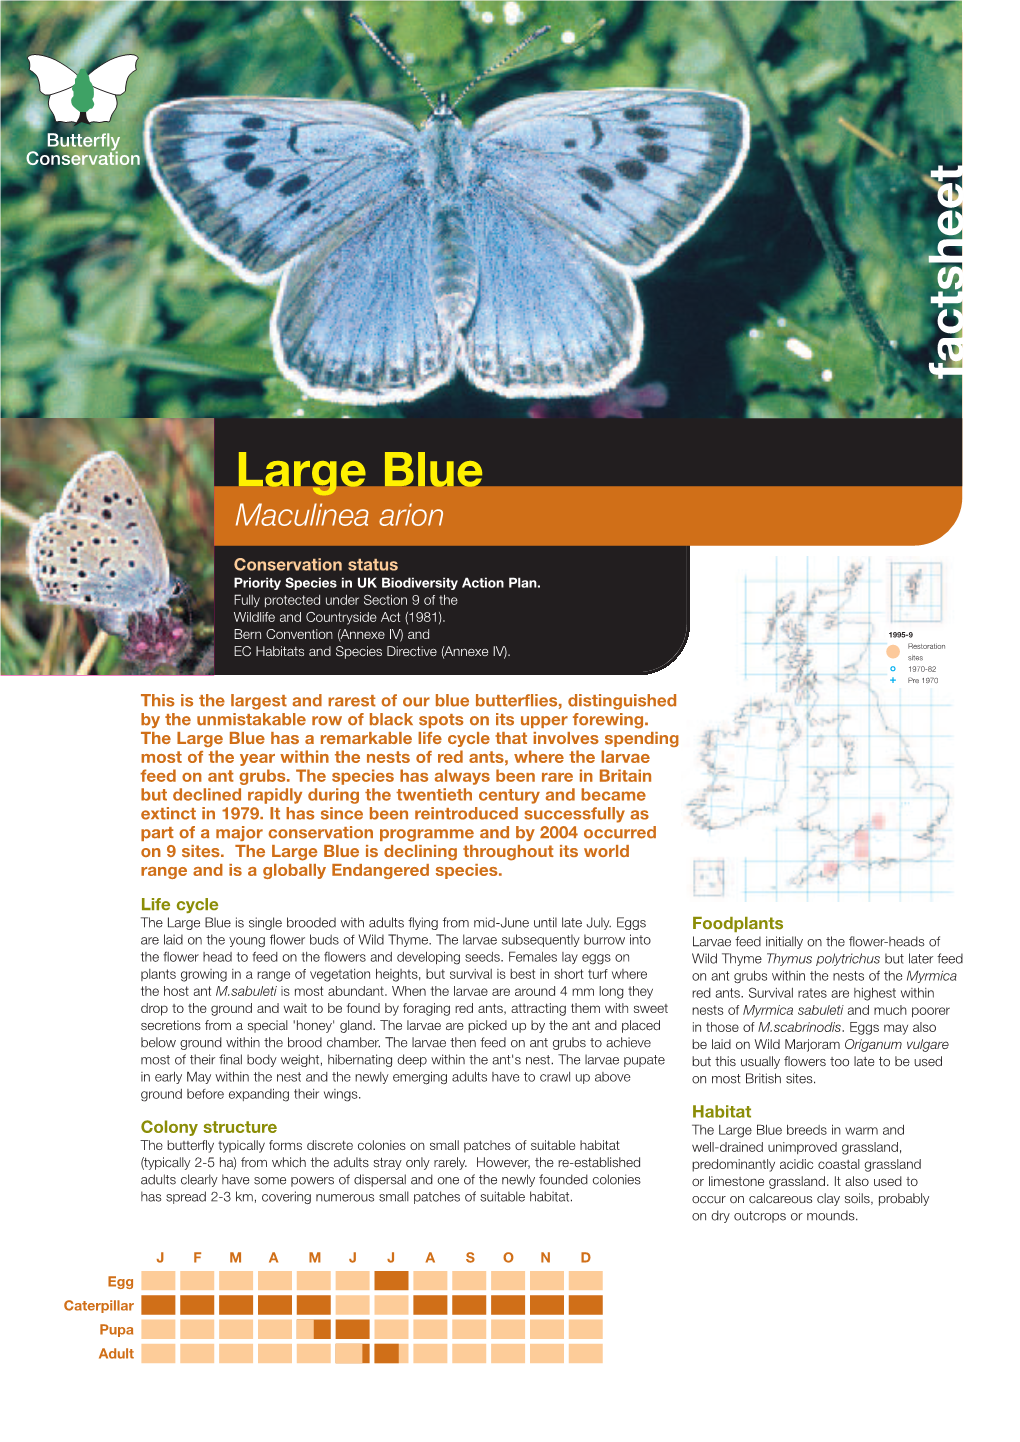 Large Blue Priority Species Factsheet